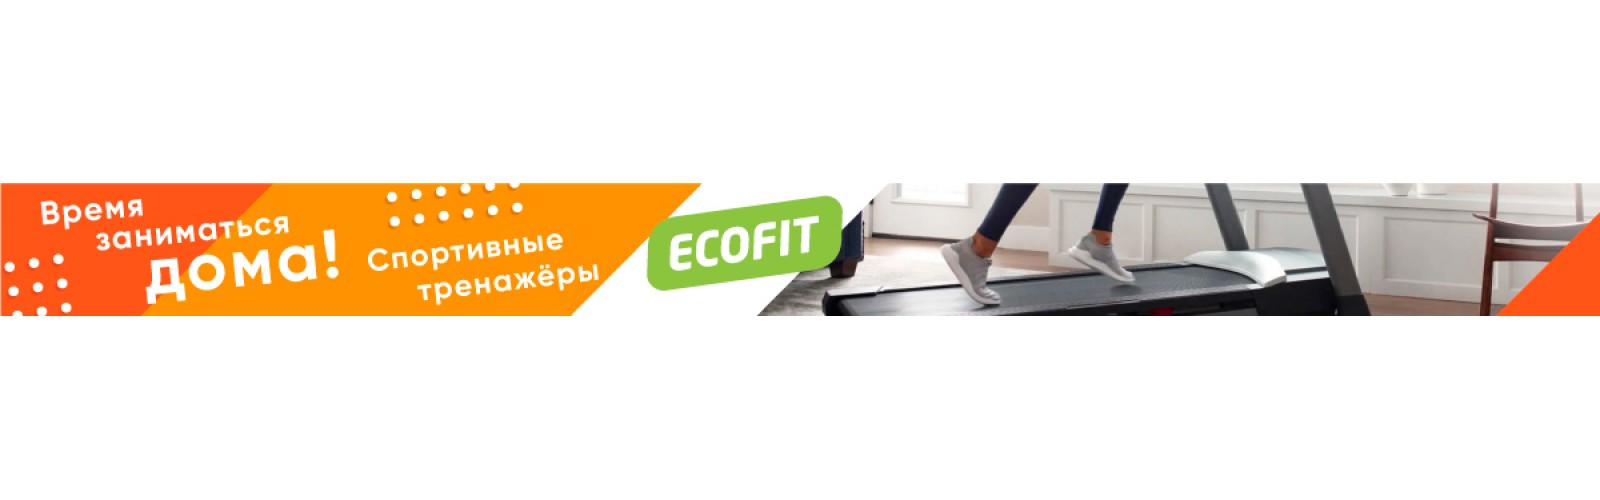 Орбитреки EcoFit